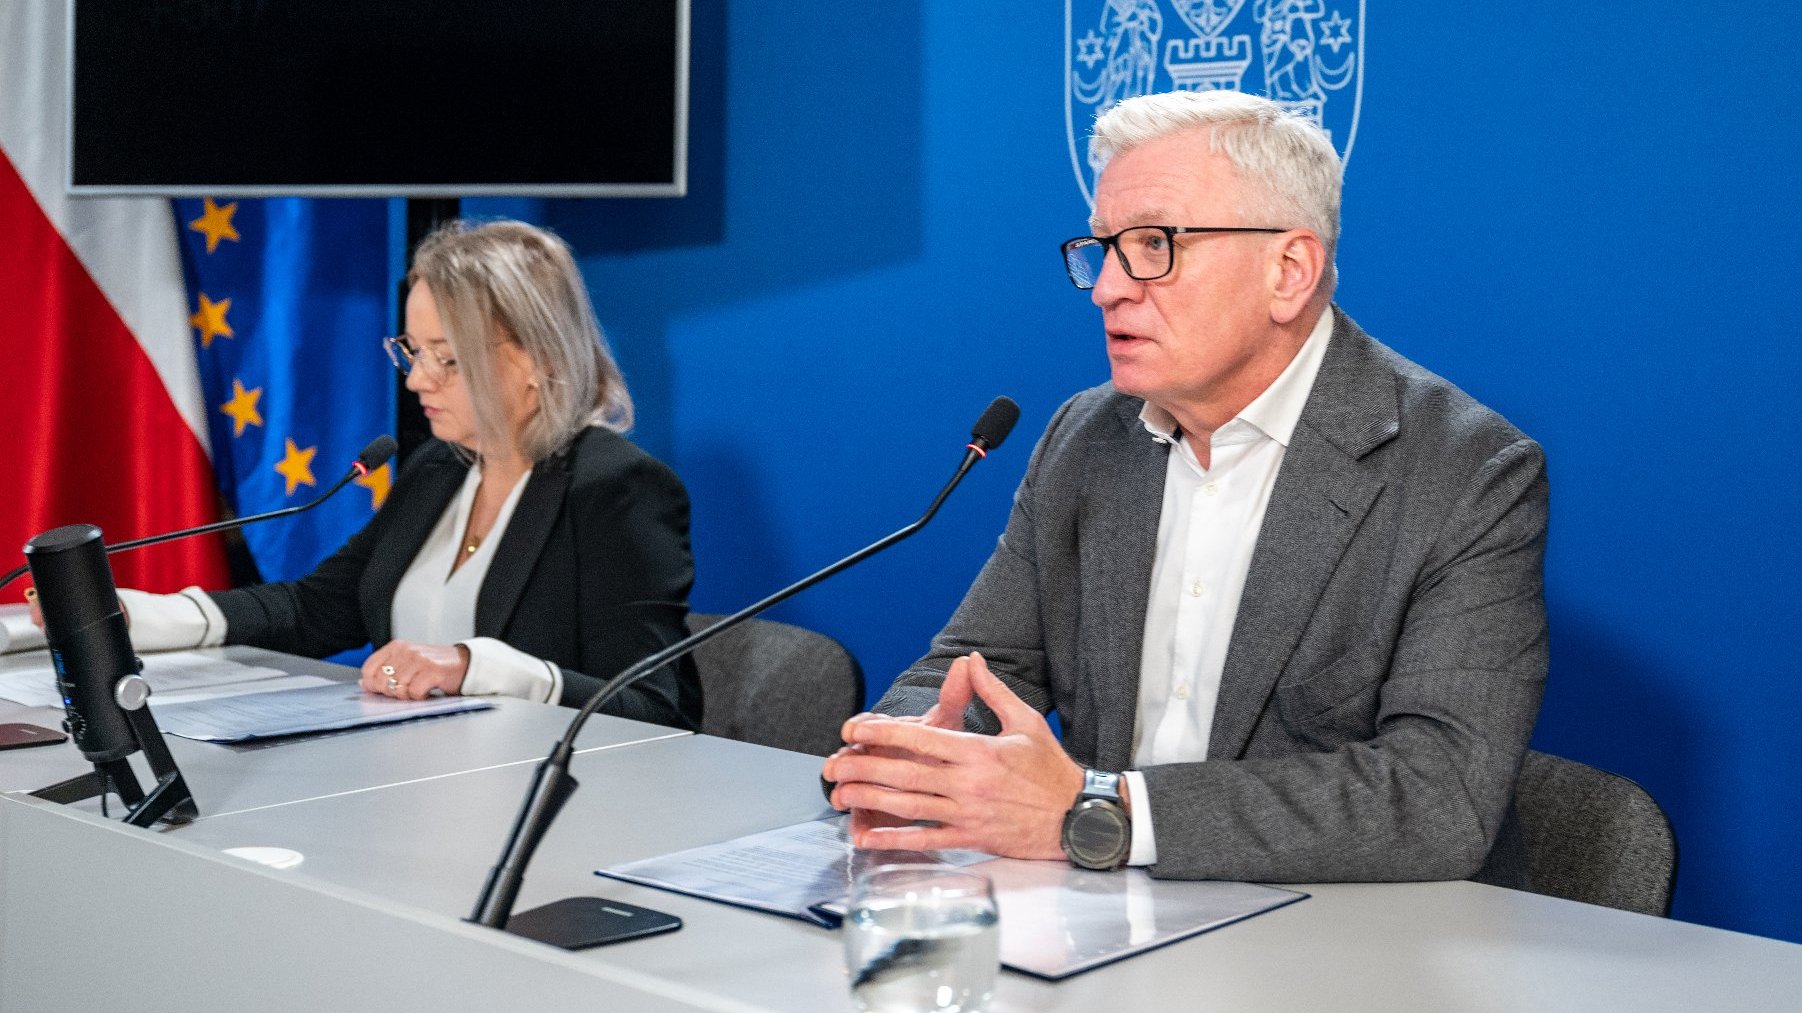 Na zdjęciu dwie osobyz a stołem konferencyjnym, w tym prezydent Poznania